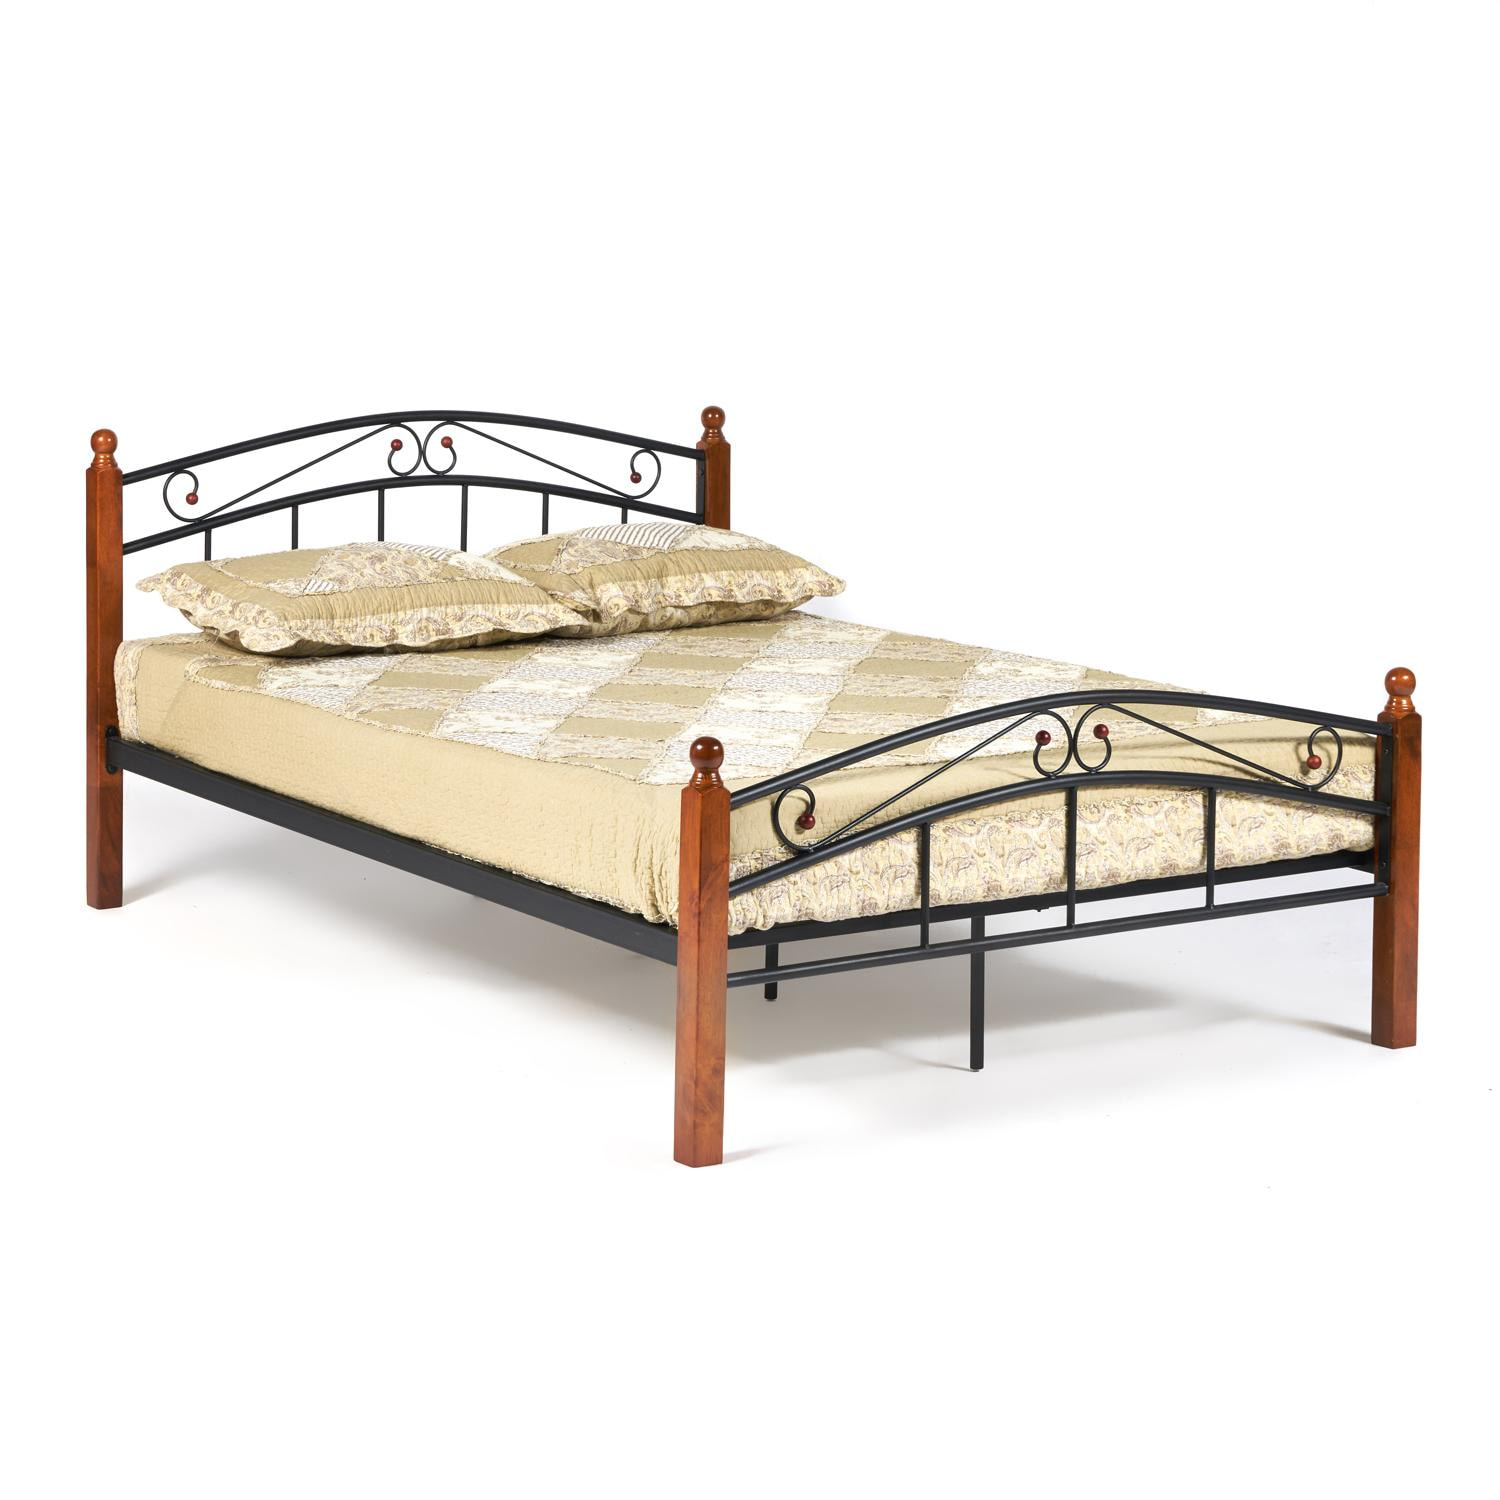 Кровать AT-8077 Wood slat base дерево гевея/металл, 140*200 см (Double bed), красный дуб/черный